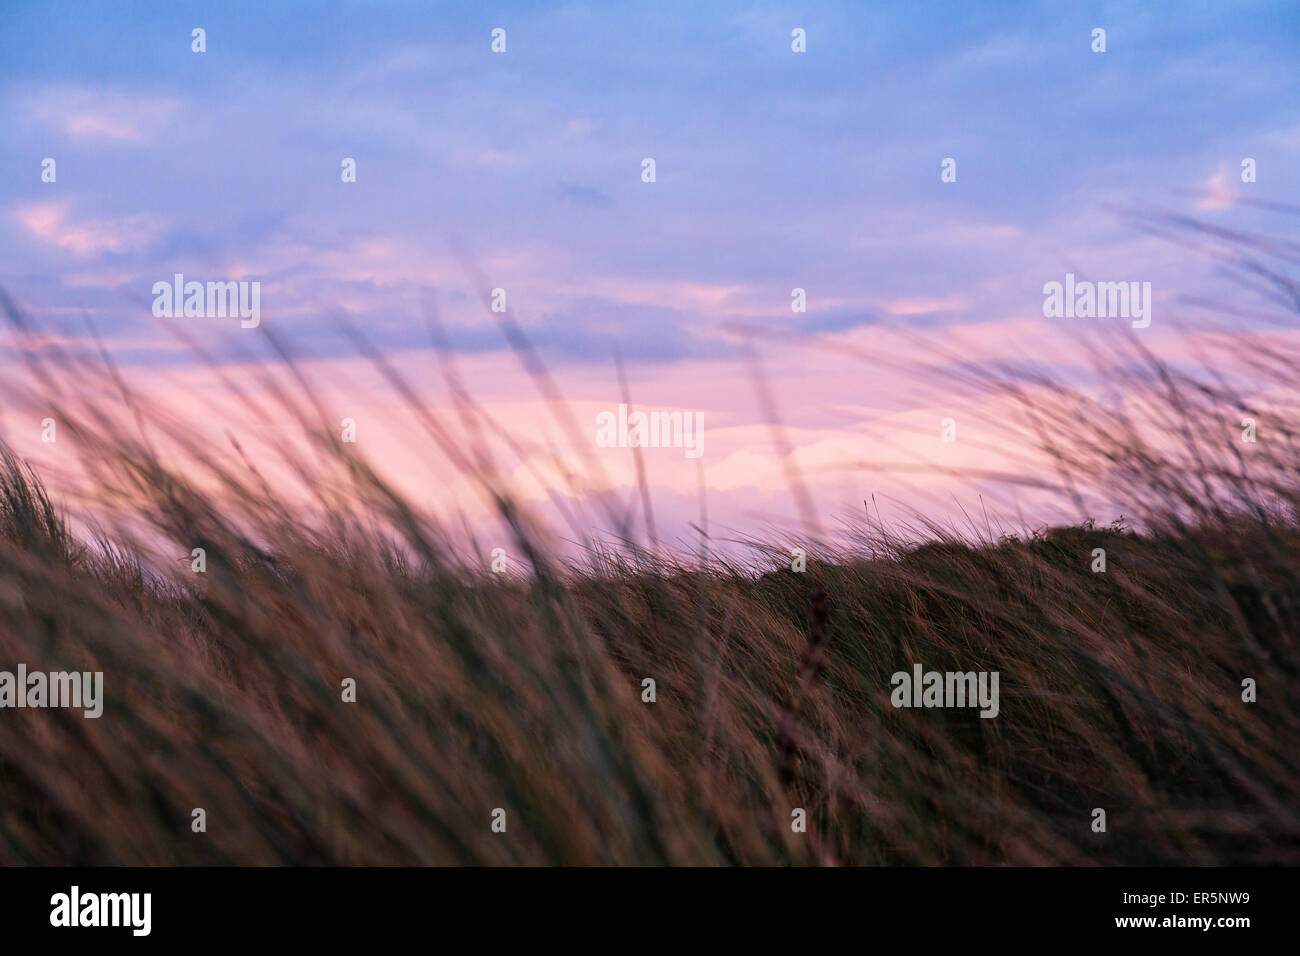 Grass in den Dünen bei Sonnenuntergang, Strand, Insel Langeoog, Nordsee, Ostfriesischen Inseln, Ostfriesland, Niedersachsen, Deutschland, Europa Stockfoto